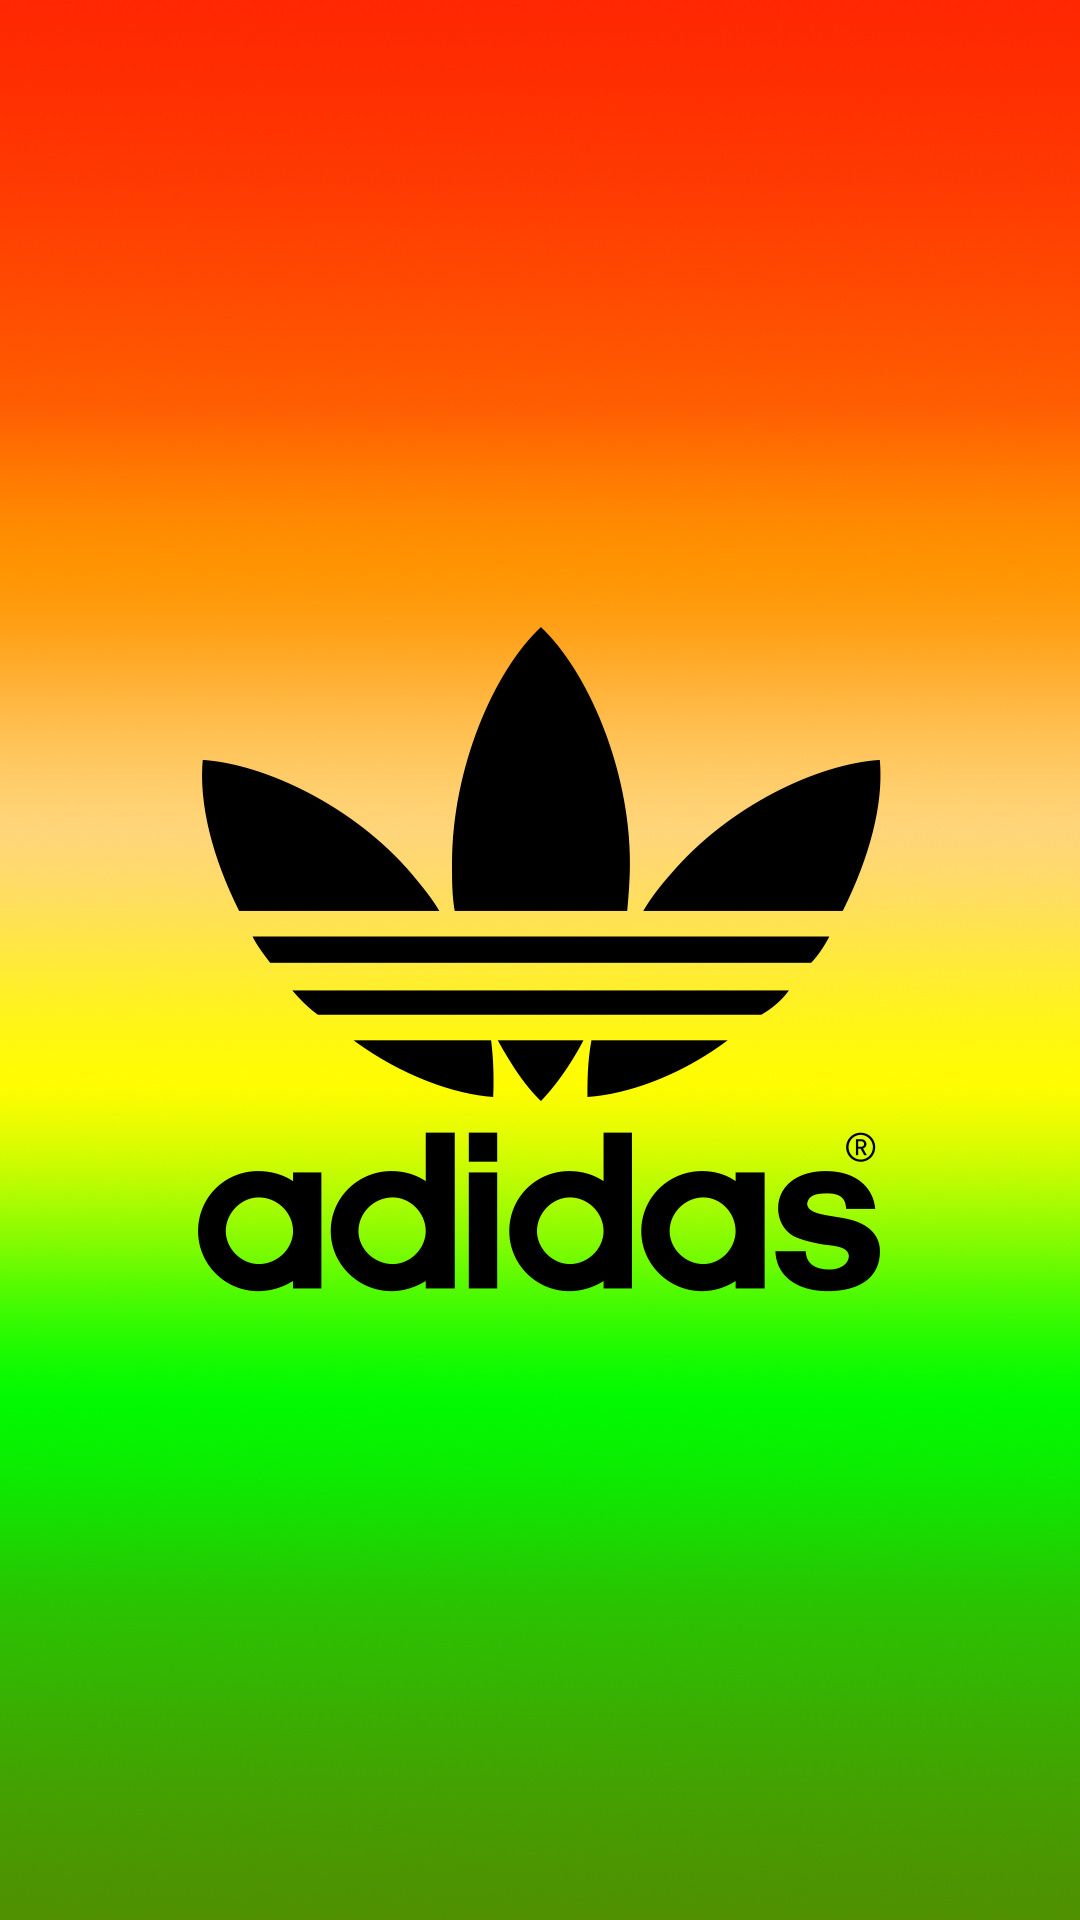 adidas originals wallpaper,green,logo,yellow,font,graphics